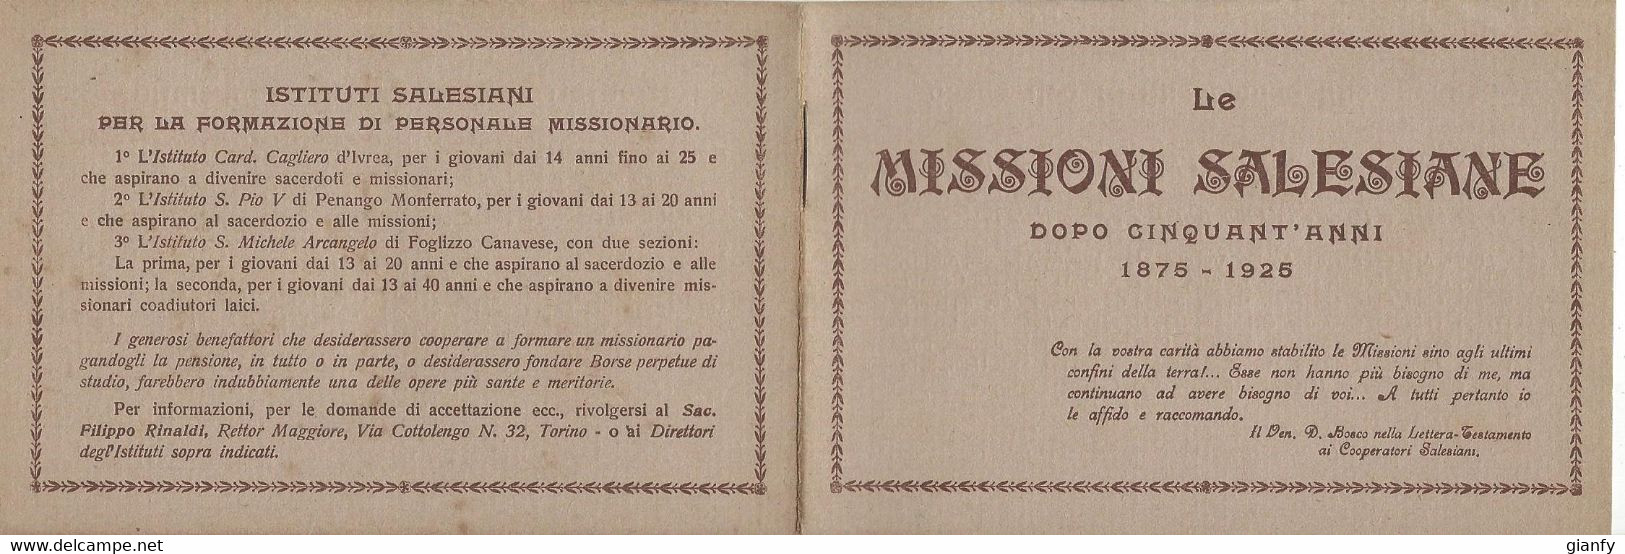 LE MISSIONI SALESIANE DOPO 50 ANNI 1875-1925 - Godsdienst